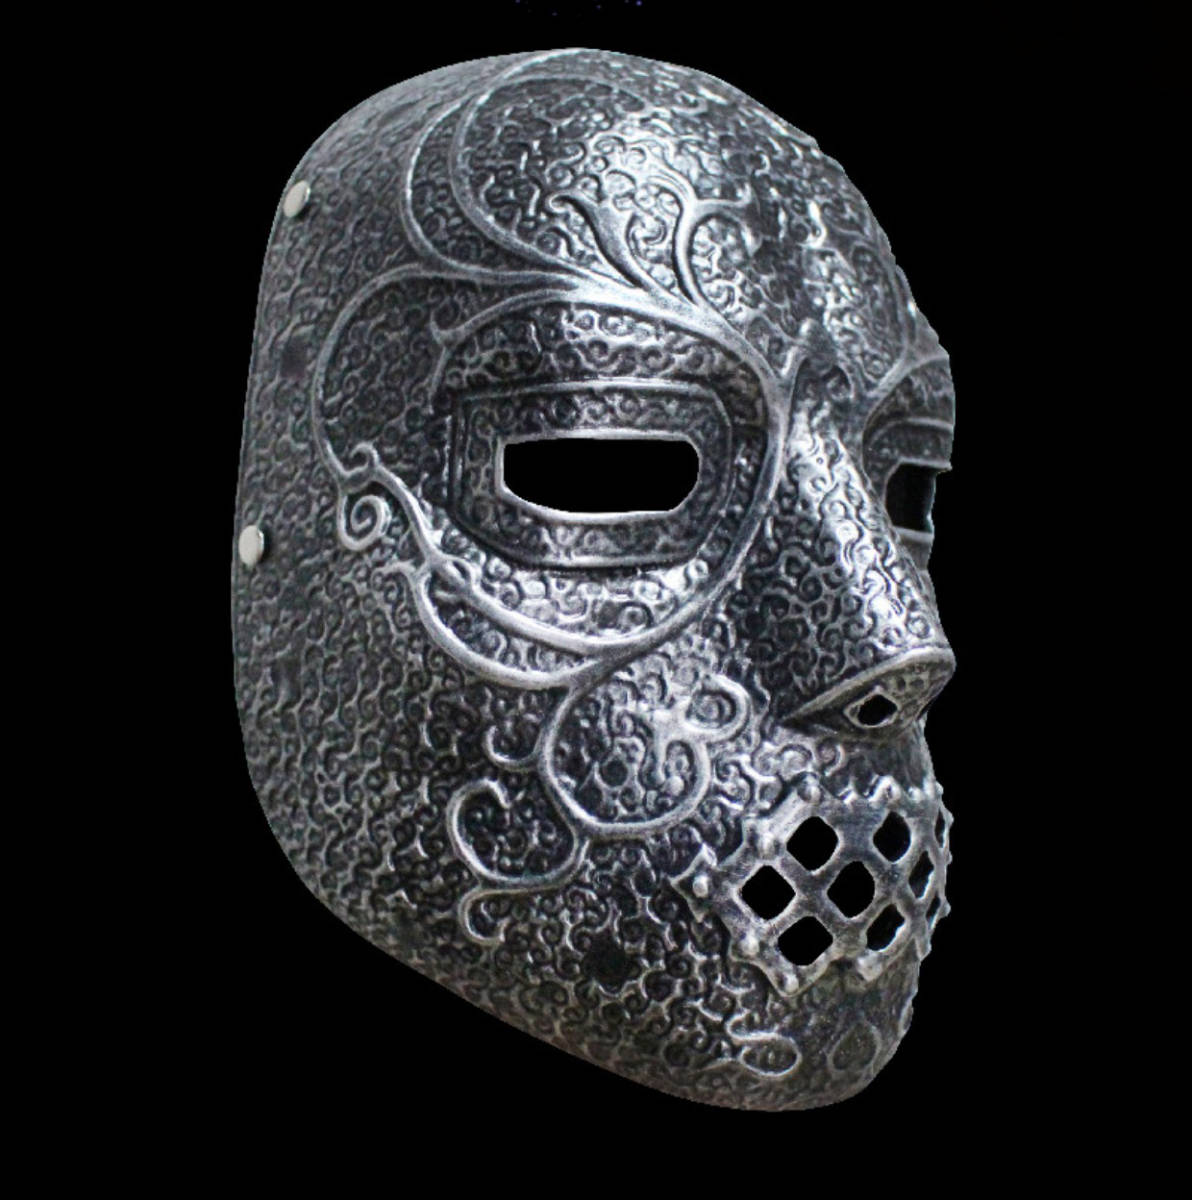  новый товар костюмированная игра мелкие вещи реквизит маска маска маска Halloween .. хороший COSPLAY сопутствующие товары надежно качество хорошая вещь ... человек оттенок серебра 